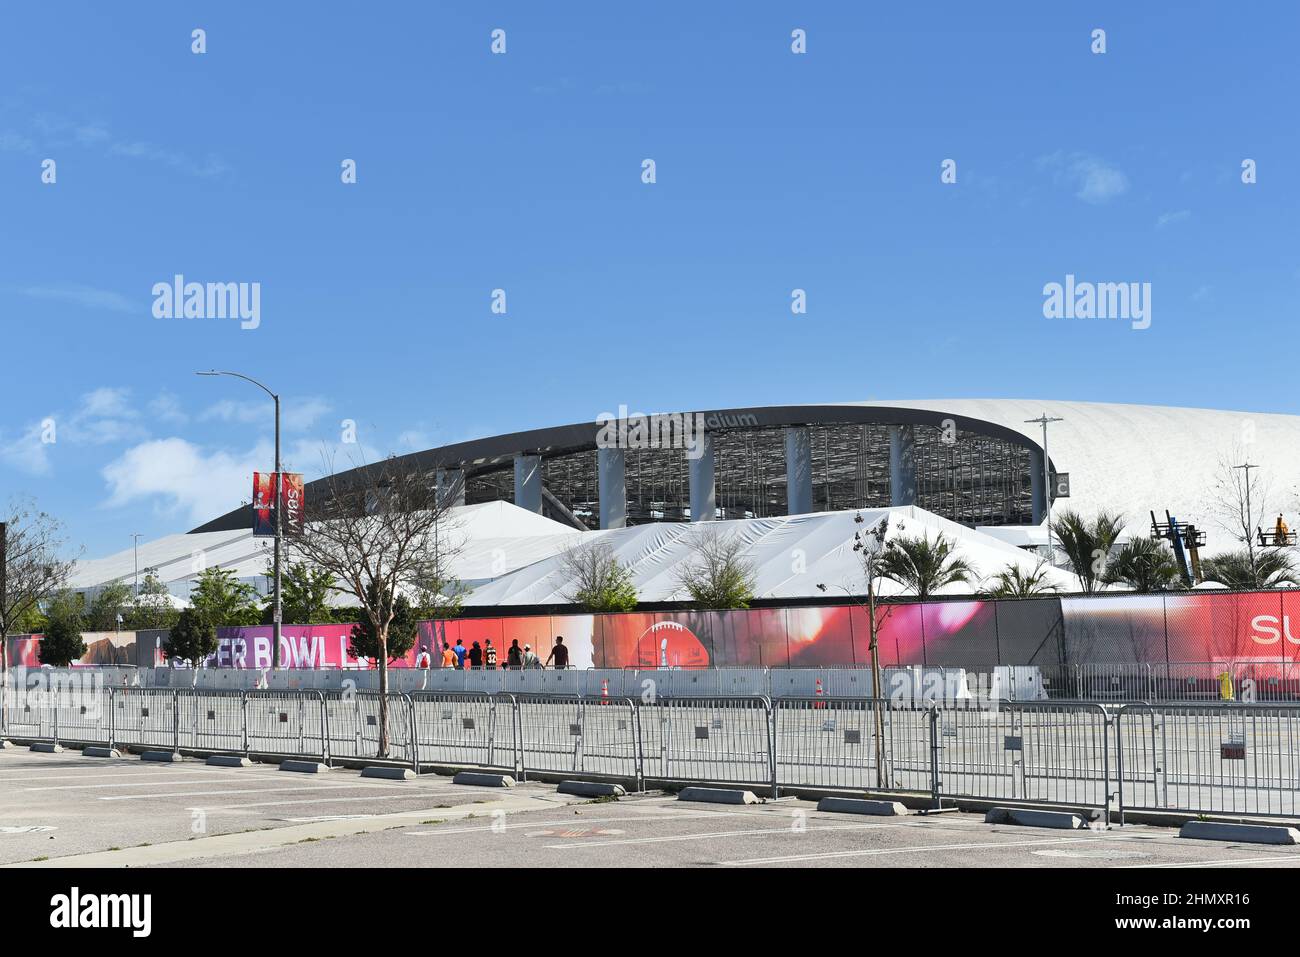 INGLEWOOD, KALIFORNIEN - 12. FEBRUAR 2022: Das Sofi-Stadion wurde für das Super Bowl LVI-Spiel zwischen den Los Angeles Rams und Cincinnati Bengals bestimmt. Stockfoto